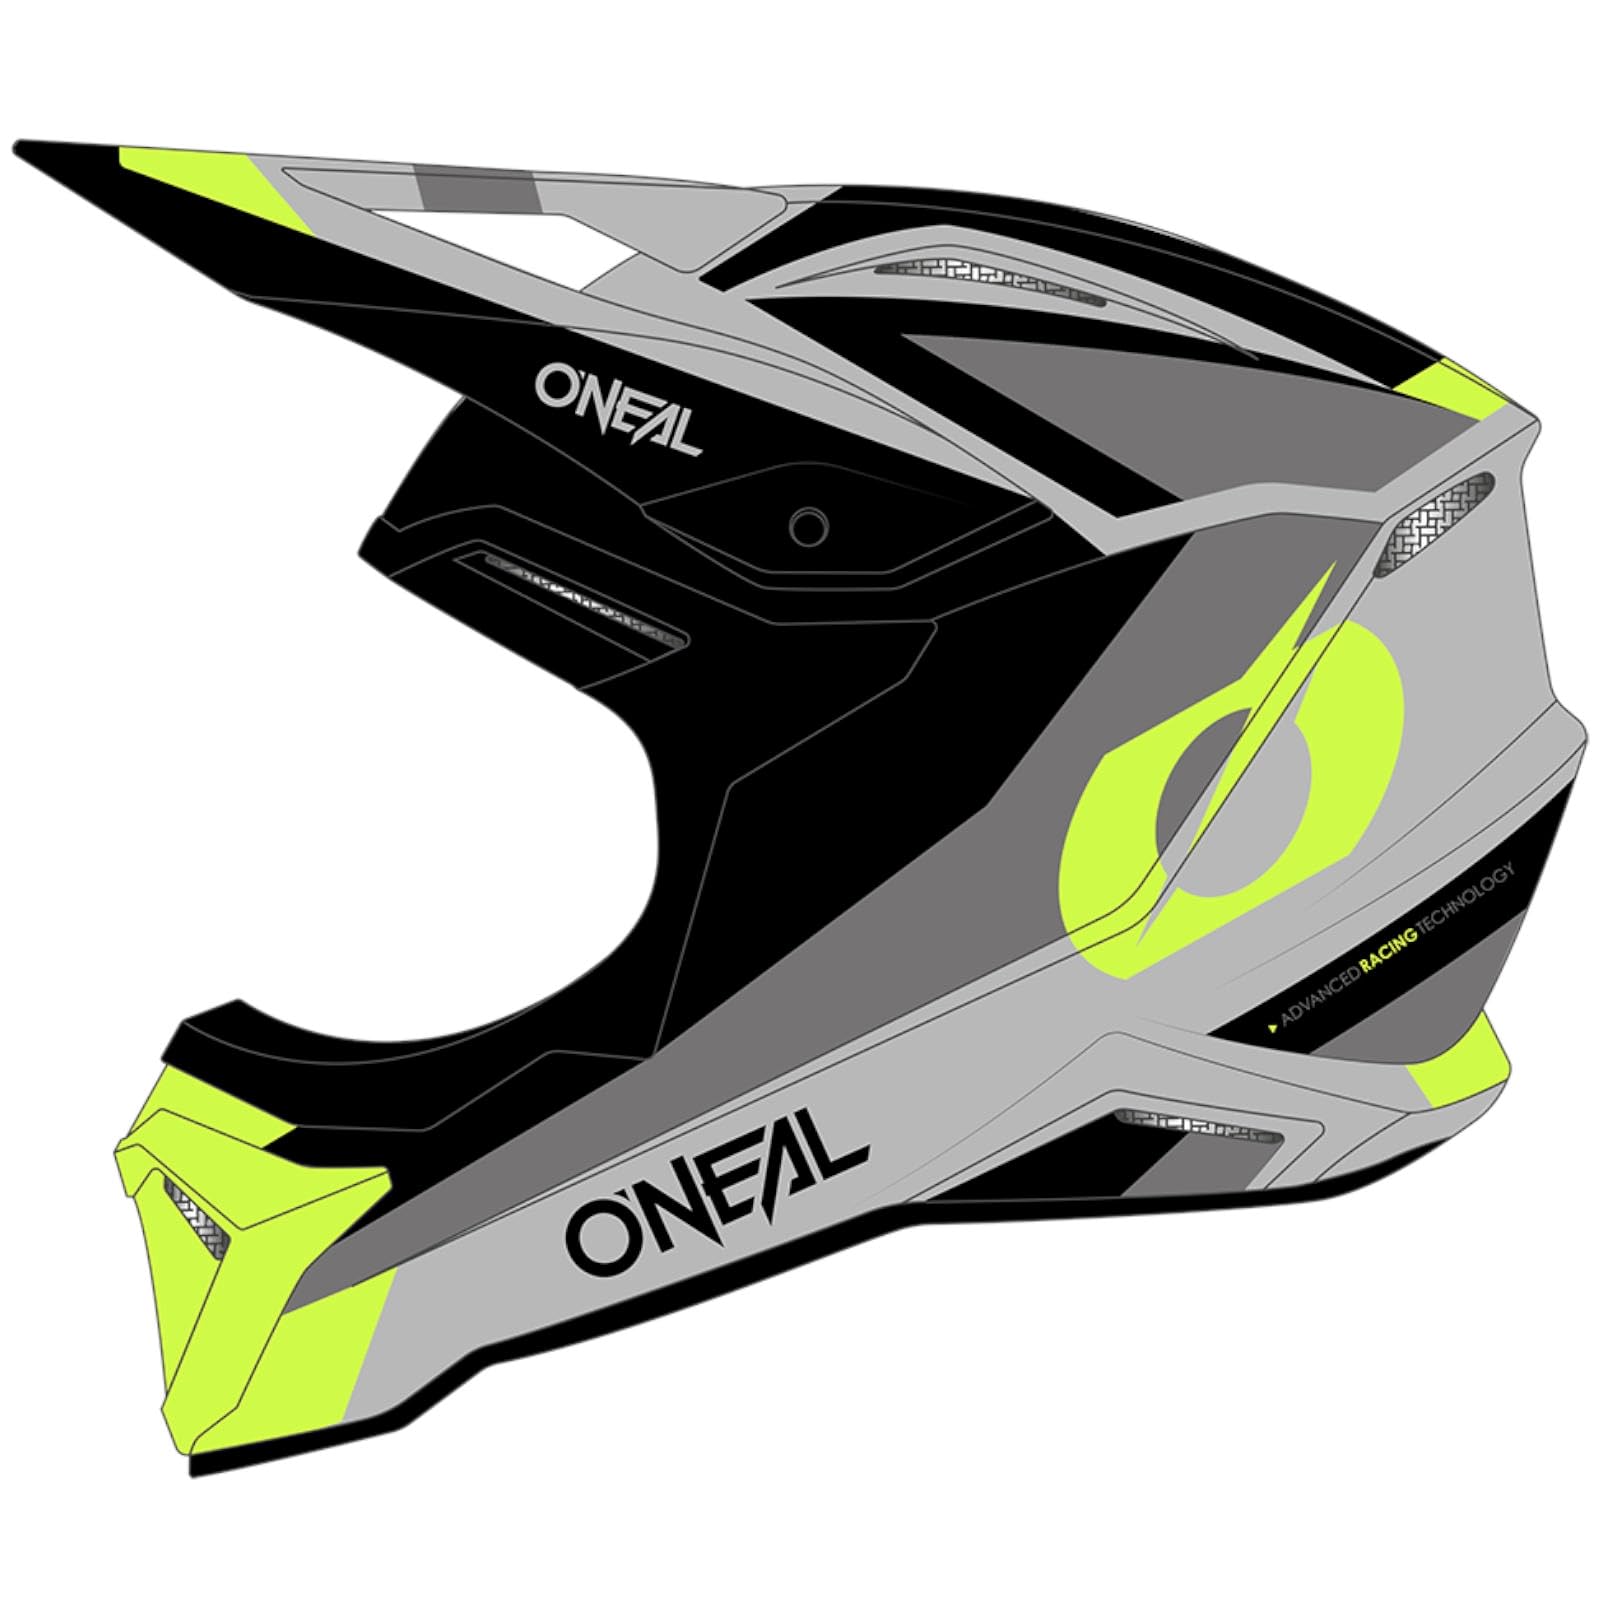 O'NEAL | Motocross-Helm | Kinder | MX Enduro | ABS-Schale, Komfort-Innenfutter, Lüftungsöffnungen für optimale Belüftung & Kühlung | 1SRS Youth Helmet Stream V.24 | Schwarz Neon Gelb | Größe XL von O'NEAL